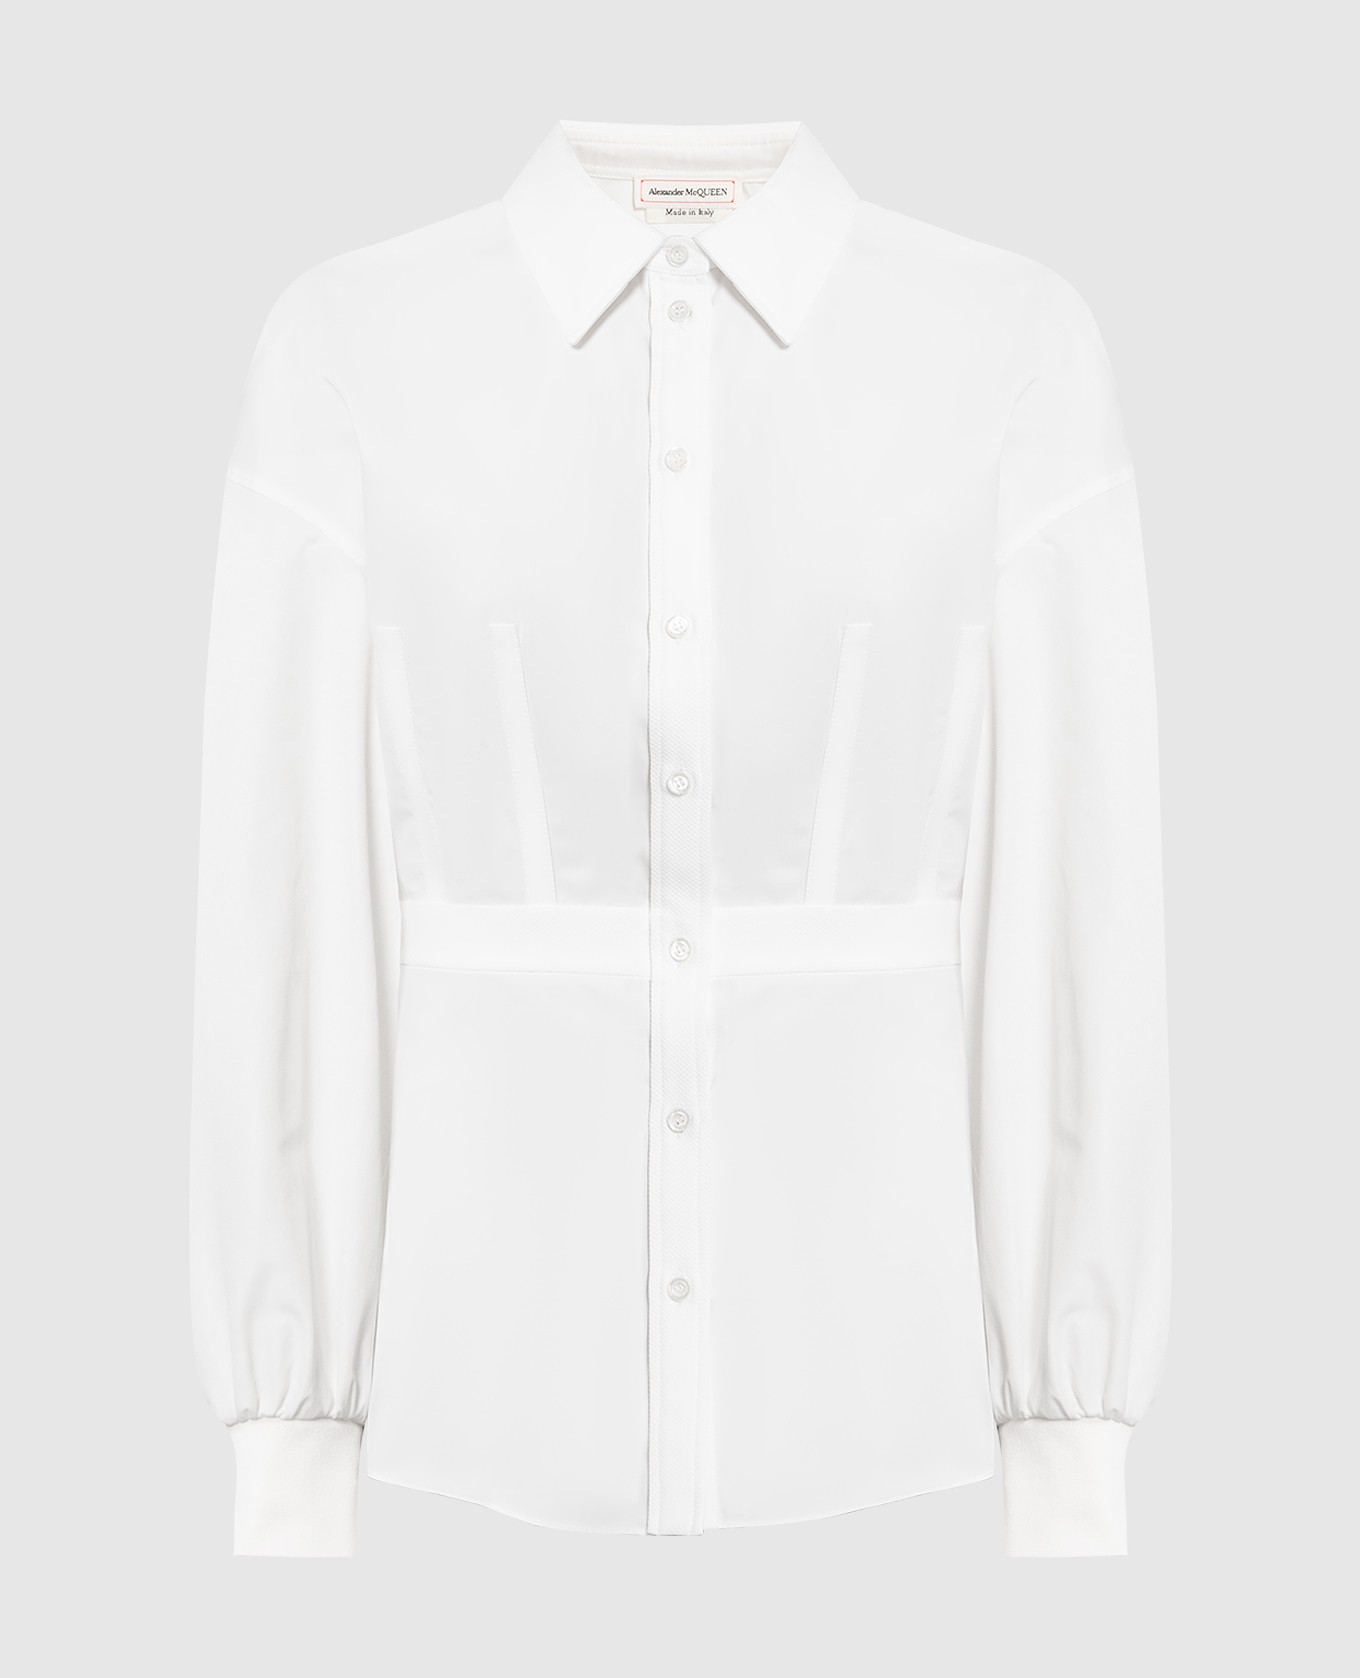 White blouse